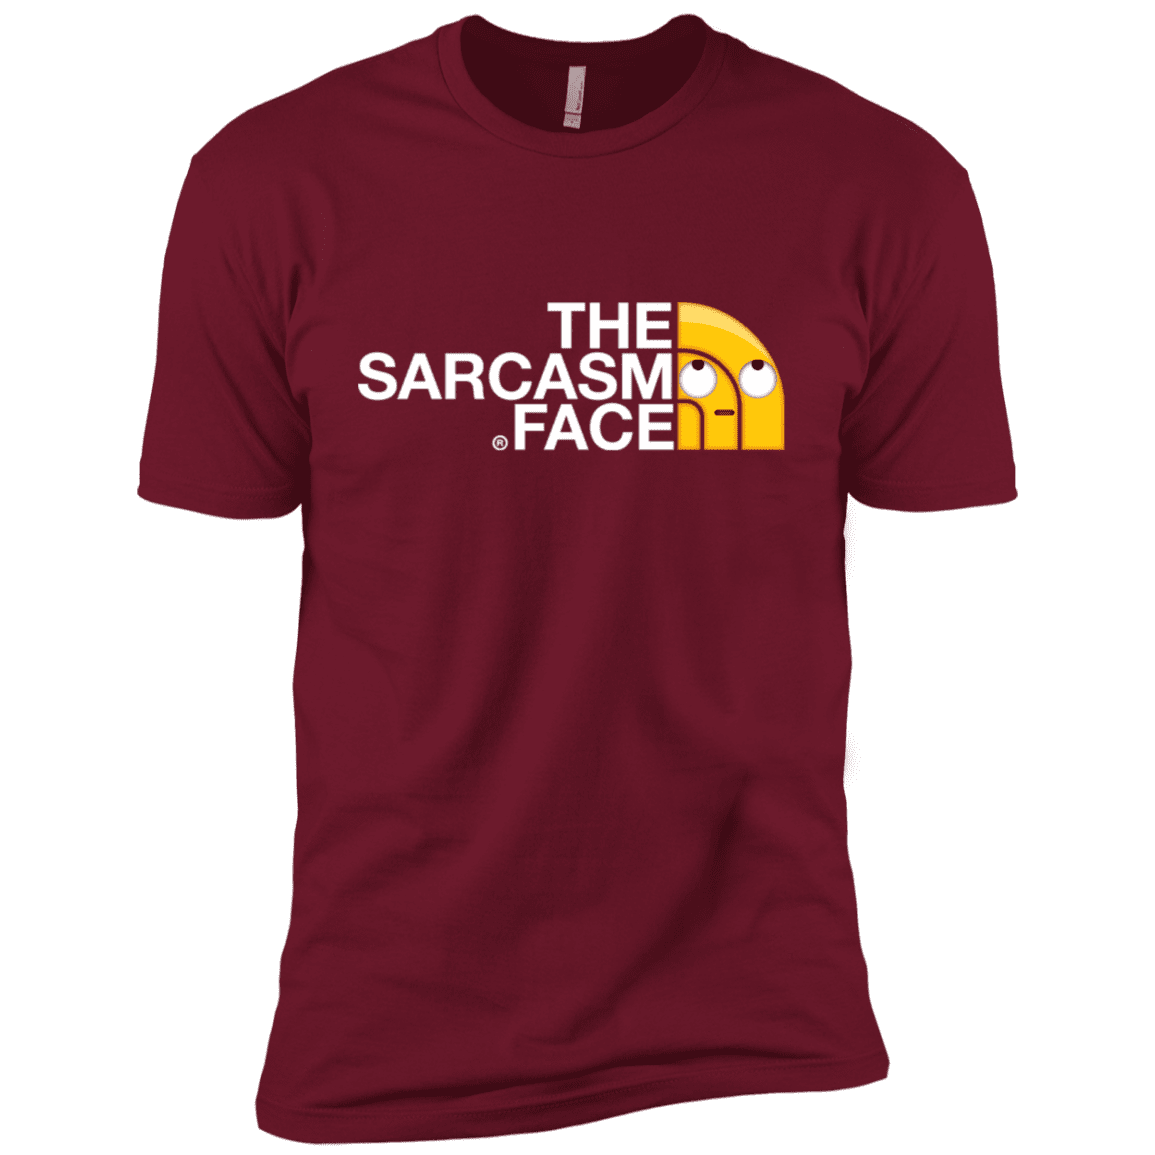 T-Shirts Cardinal / X-Small Sarcasm Face Men's Premium T-Shirt